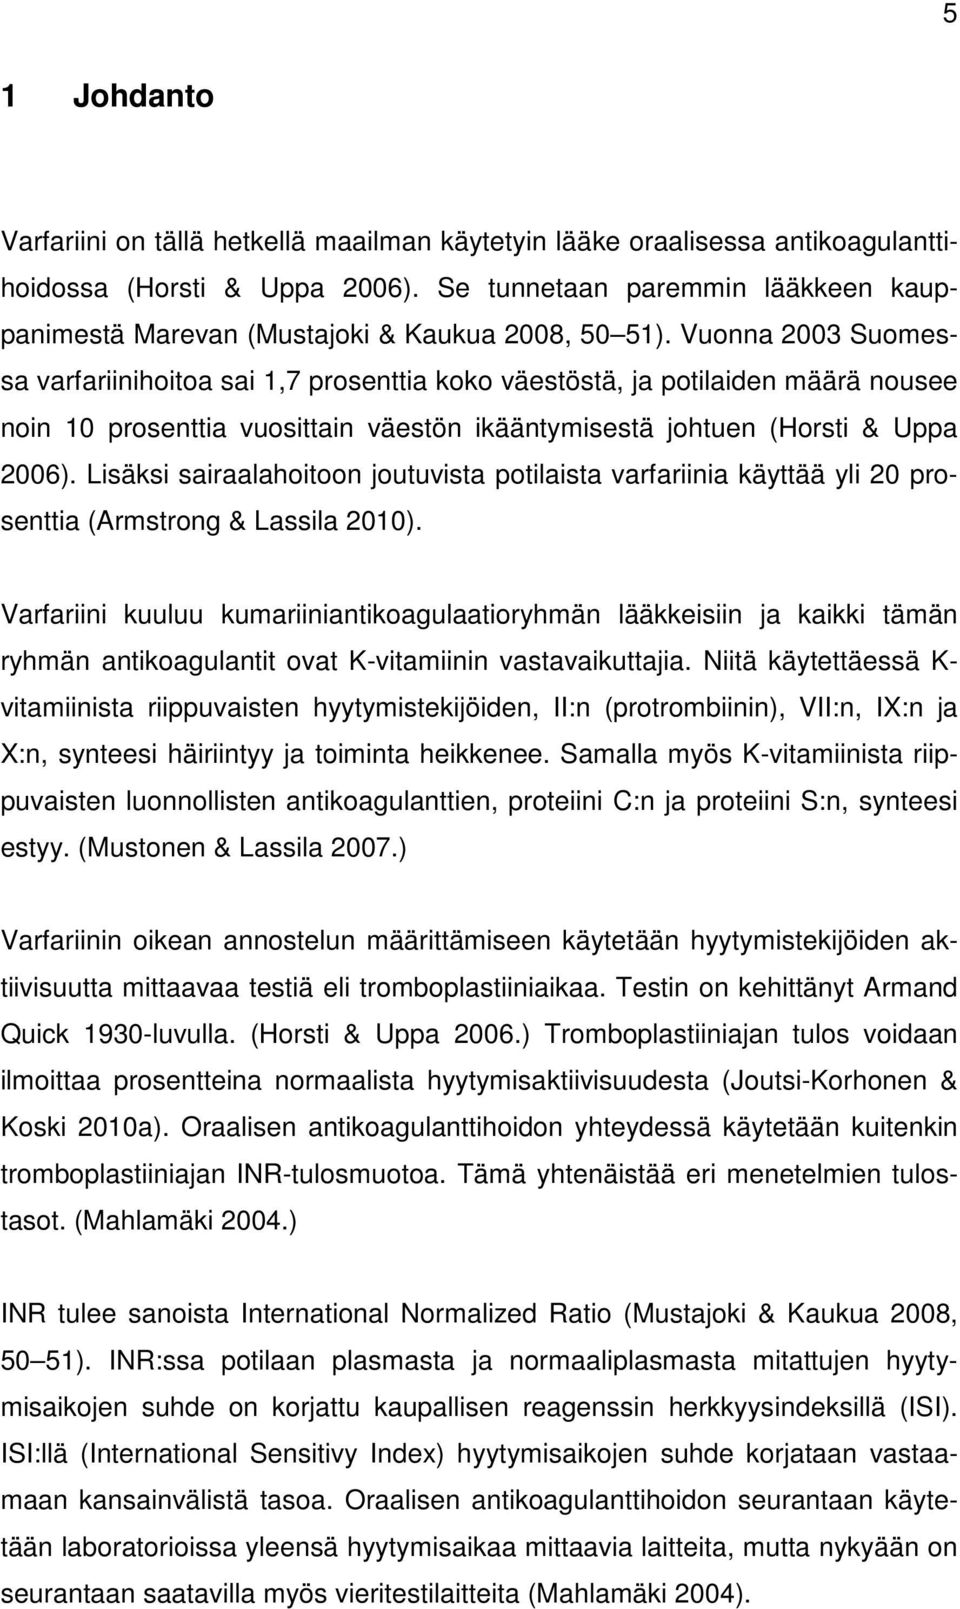 Vuonna 2003 Suomessa varfariinihoitoa sai 1,7 prosenttia koko väestöstä, ja potilaiden määrä nousee noin 10 prosenttia vuosittain väestön ikääntymisestä johtuen (Horsti & Uppa 2006).